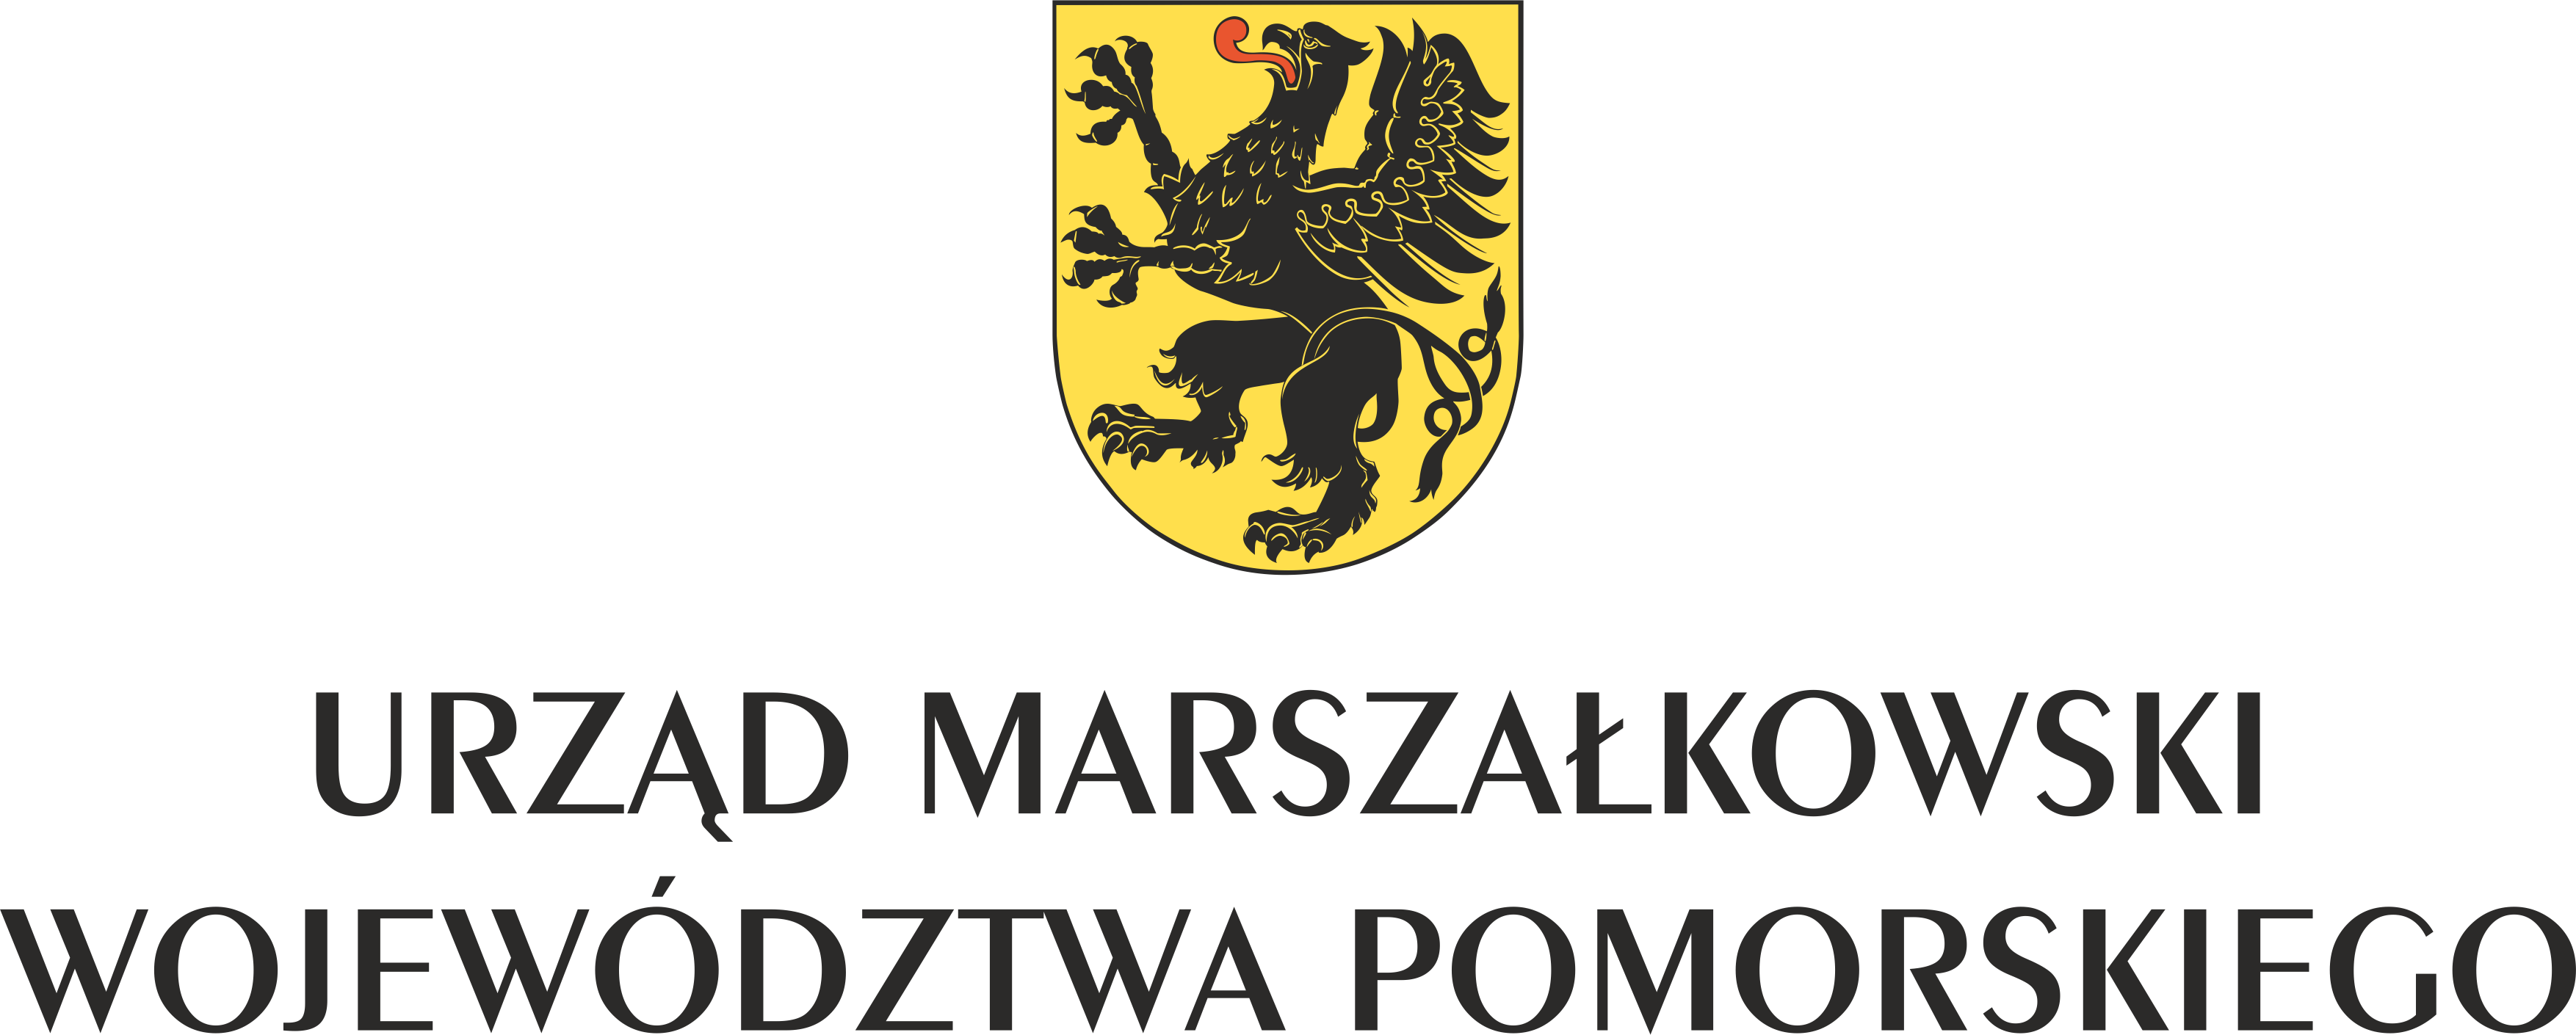 Urząd Marszałkowski Województwa Pomorskiego -Pomorskie.eu